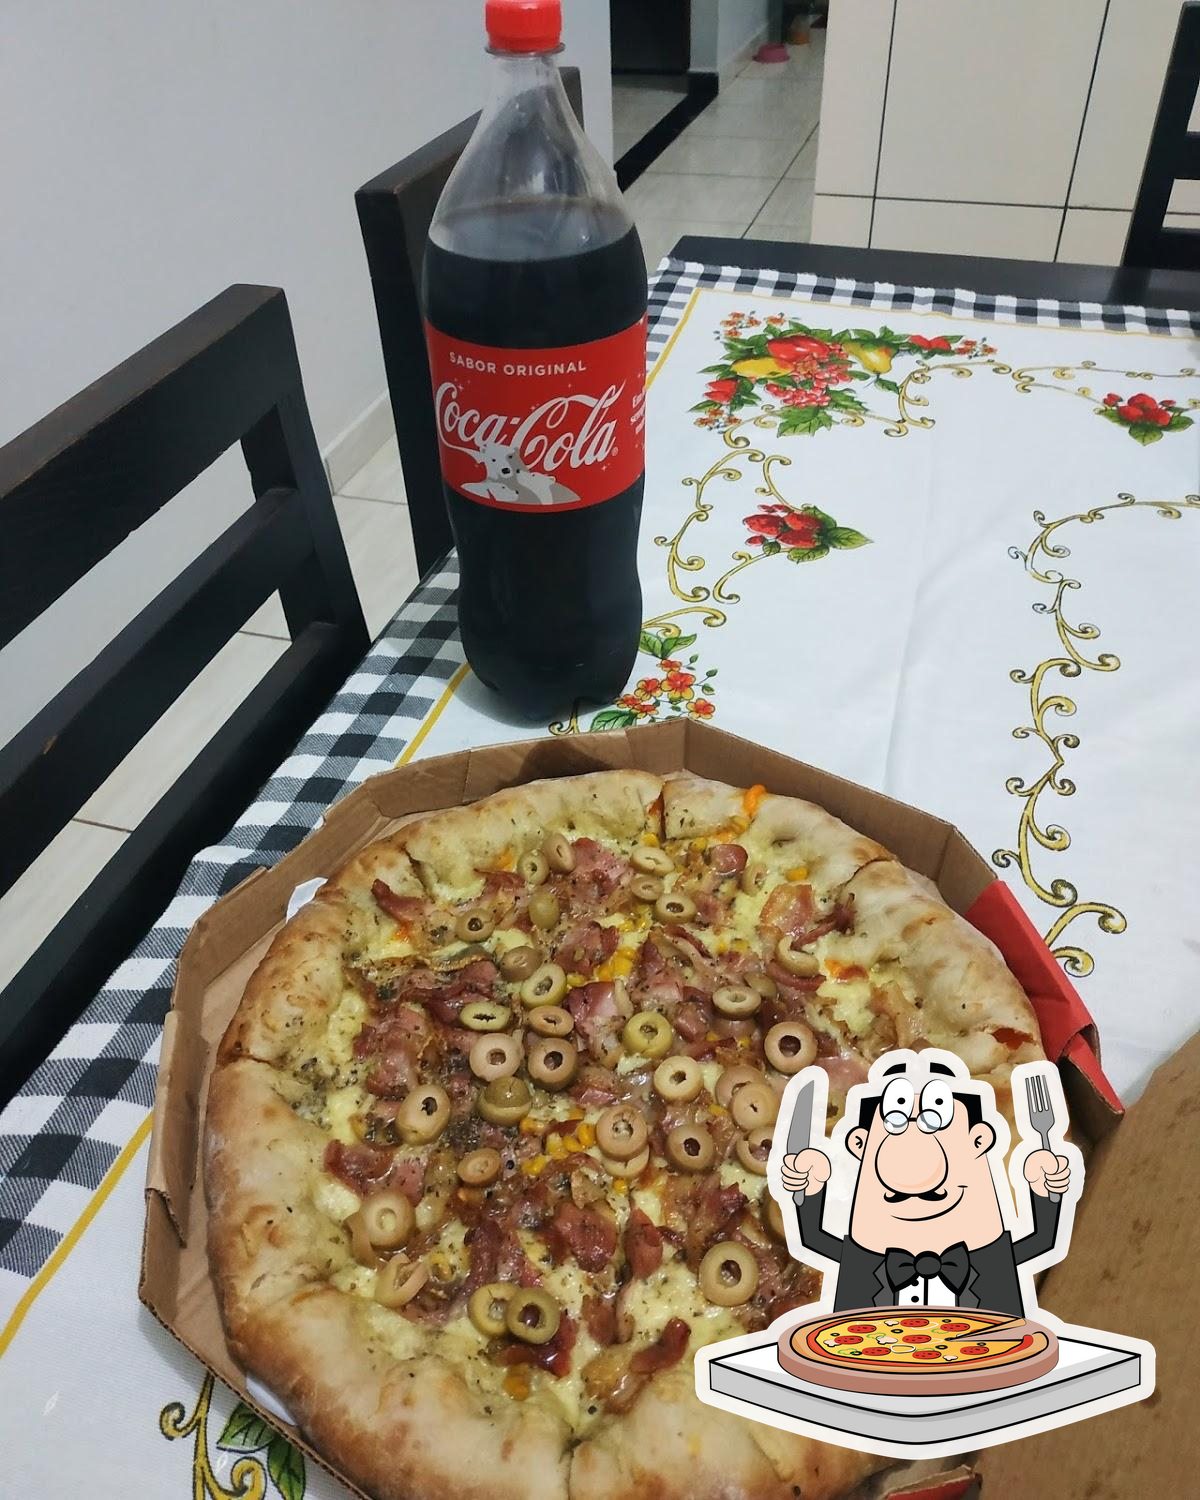 SUPER PIZZA, Morrinhos - Comentários de Restaurantes - Tripadvisor